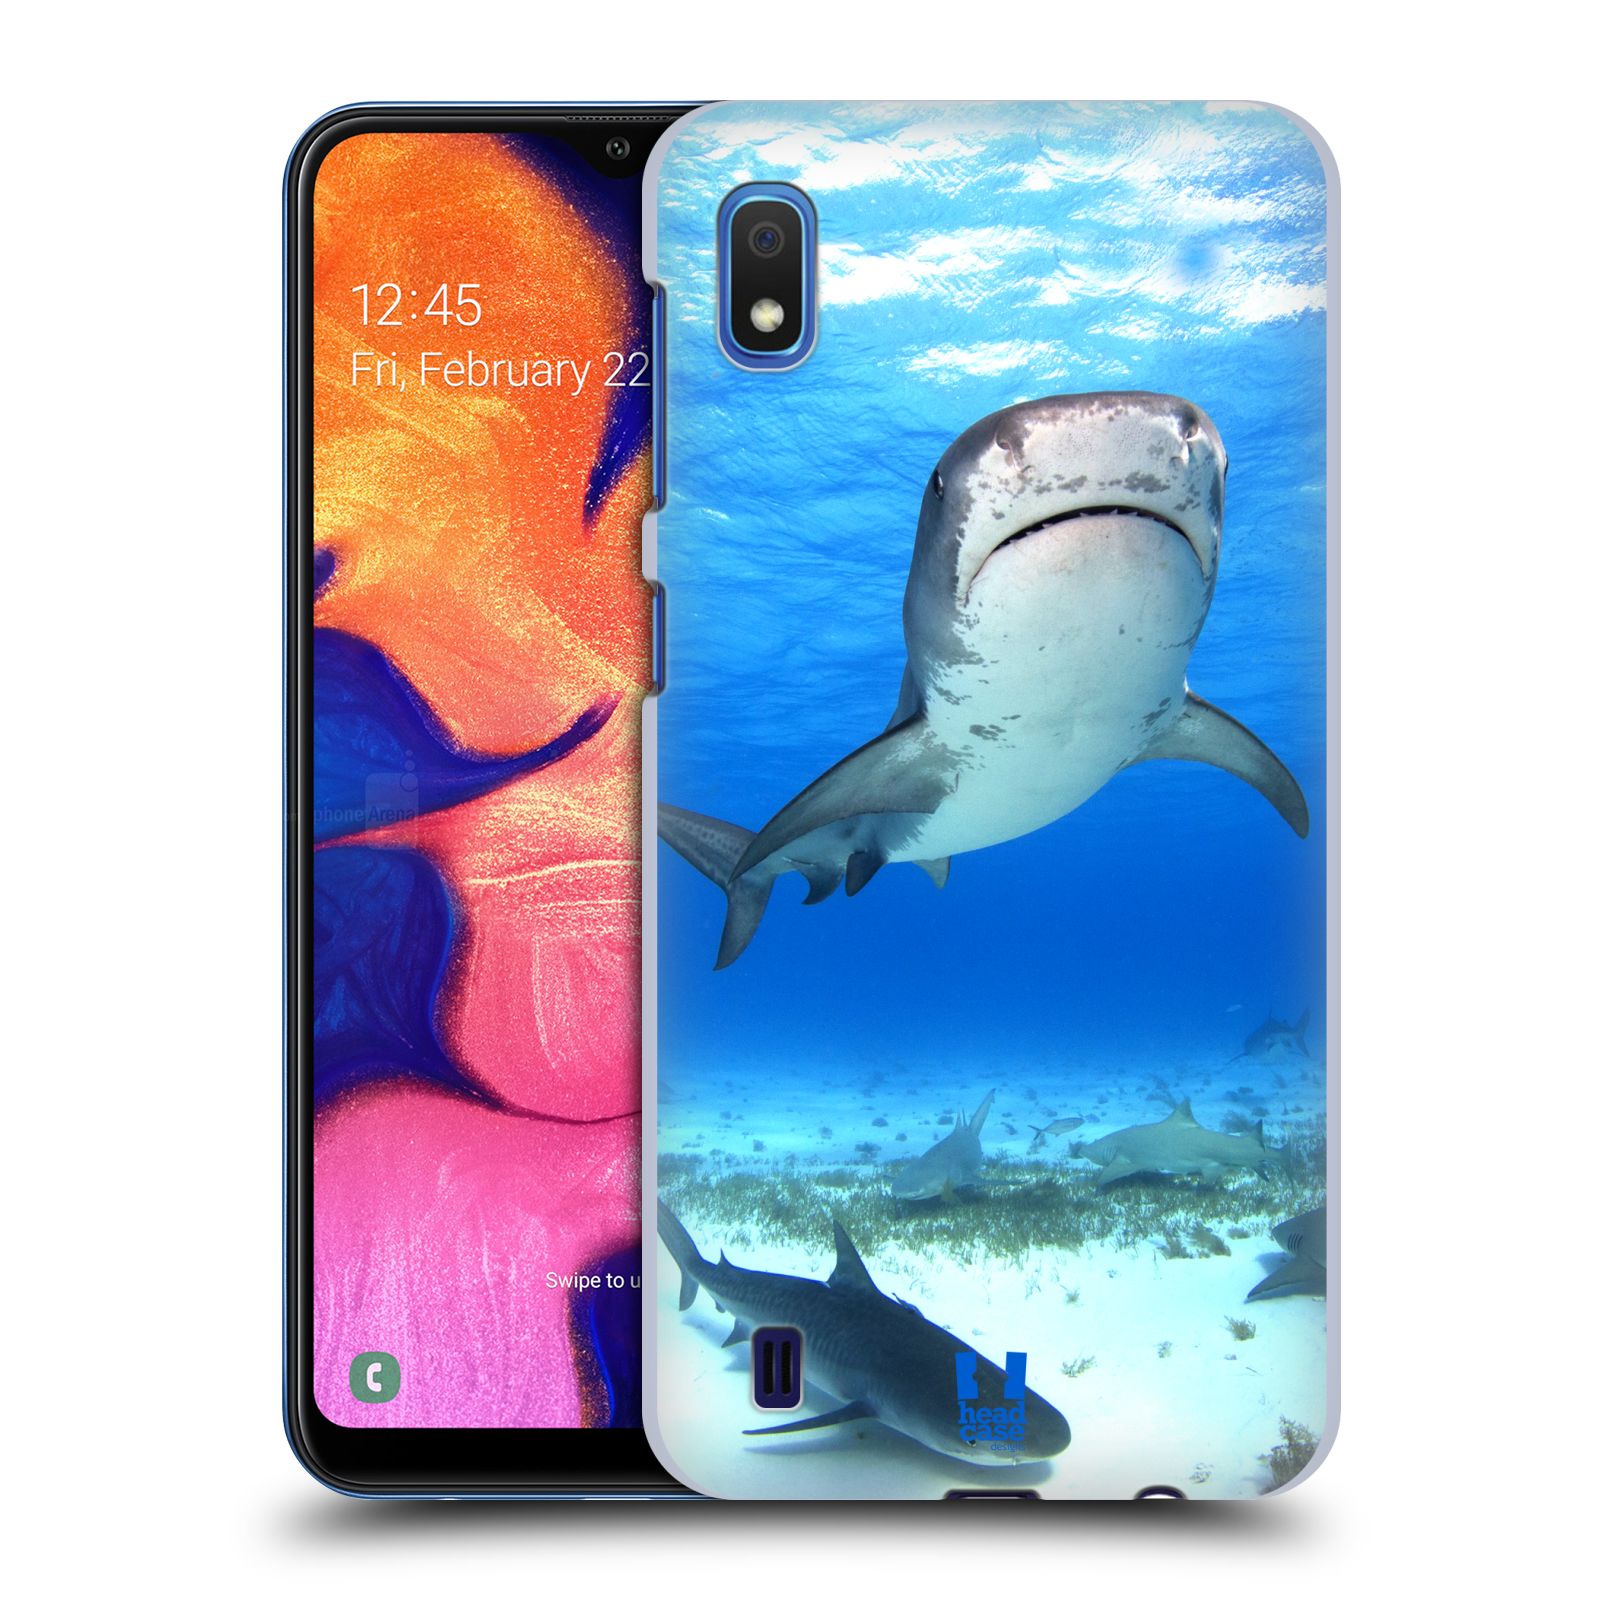 Pouzdro na mobil Samsung Galaxy A10 - HEAD CASE - vzor slavná zvířata foto žralok tygří